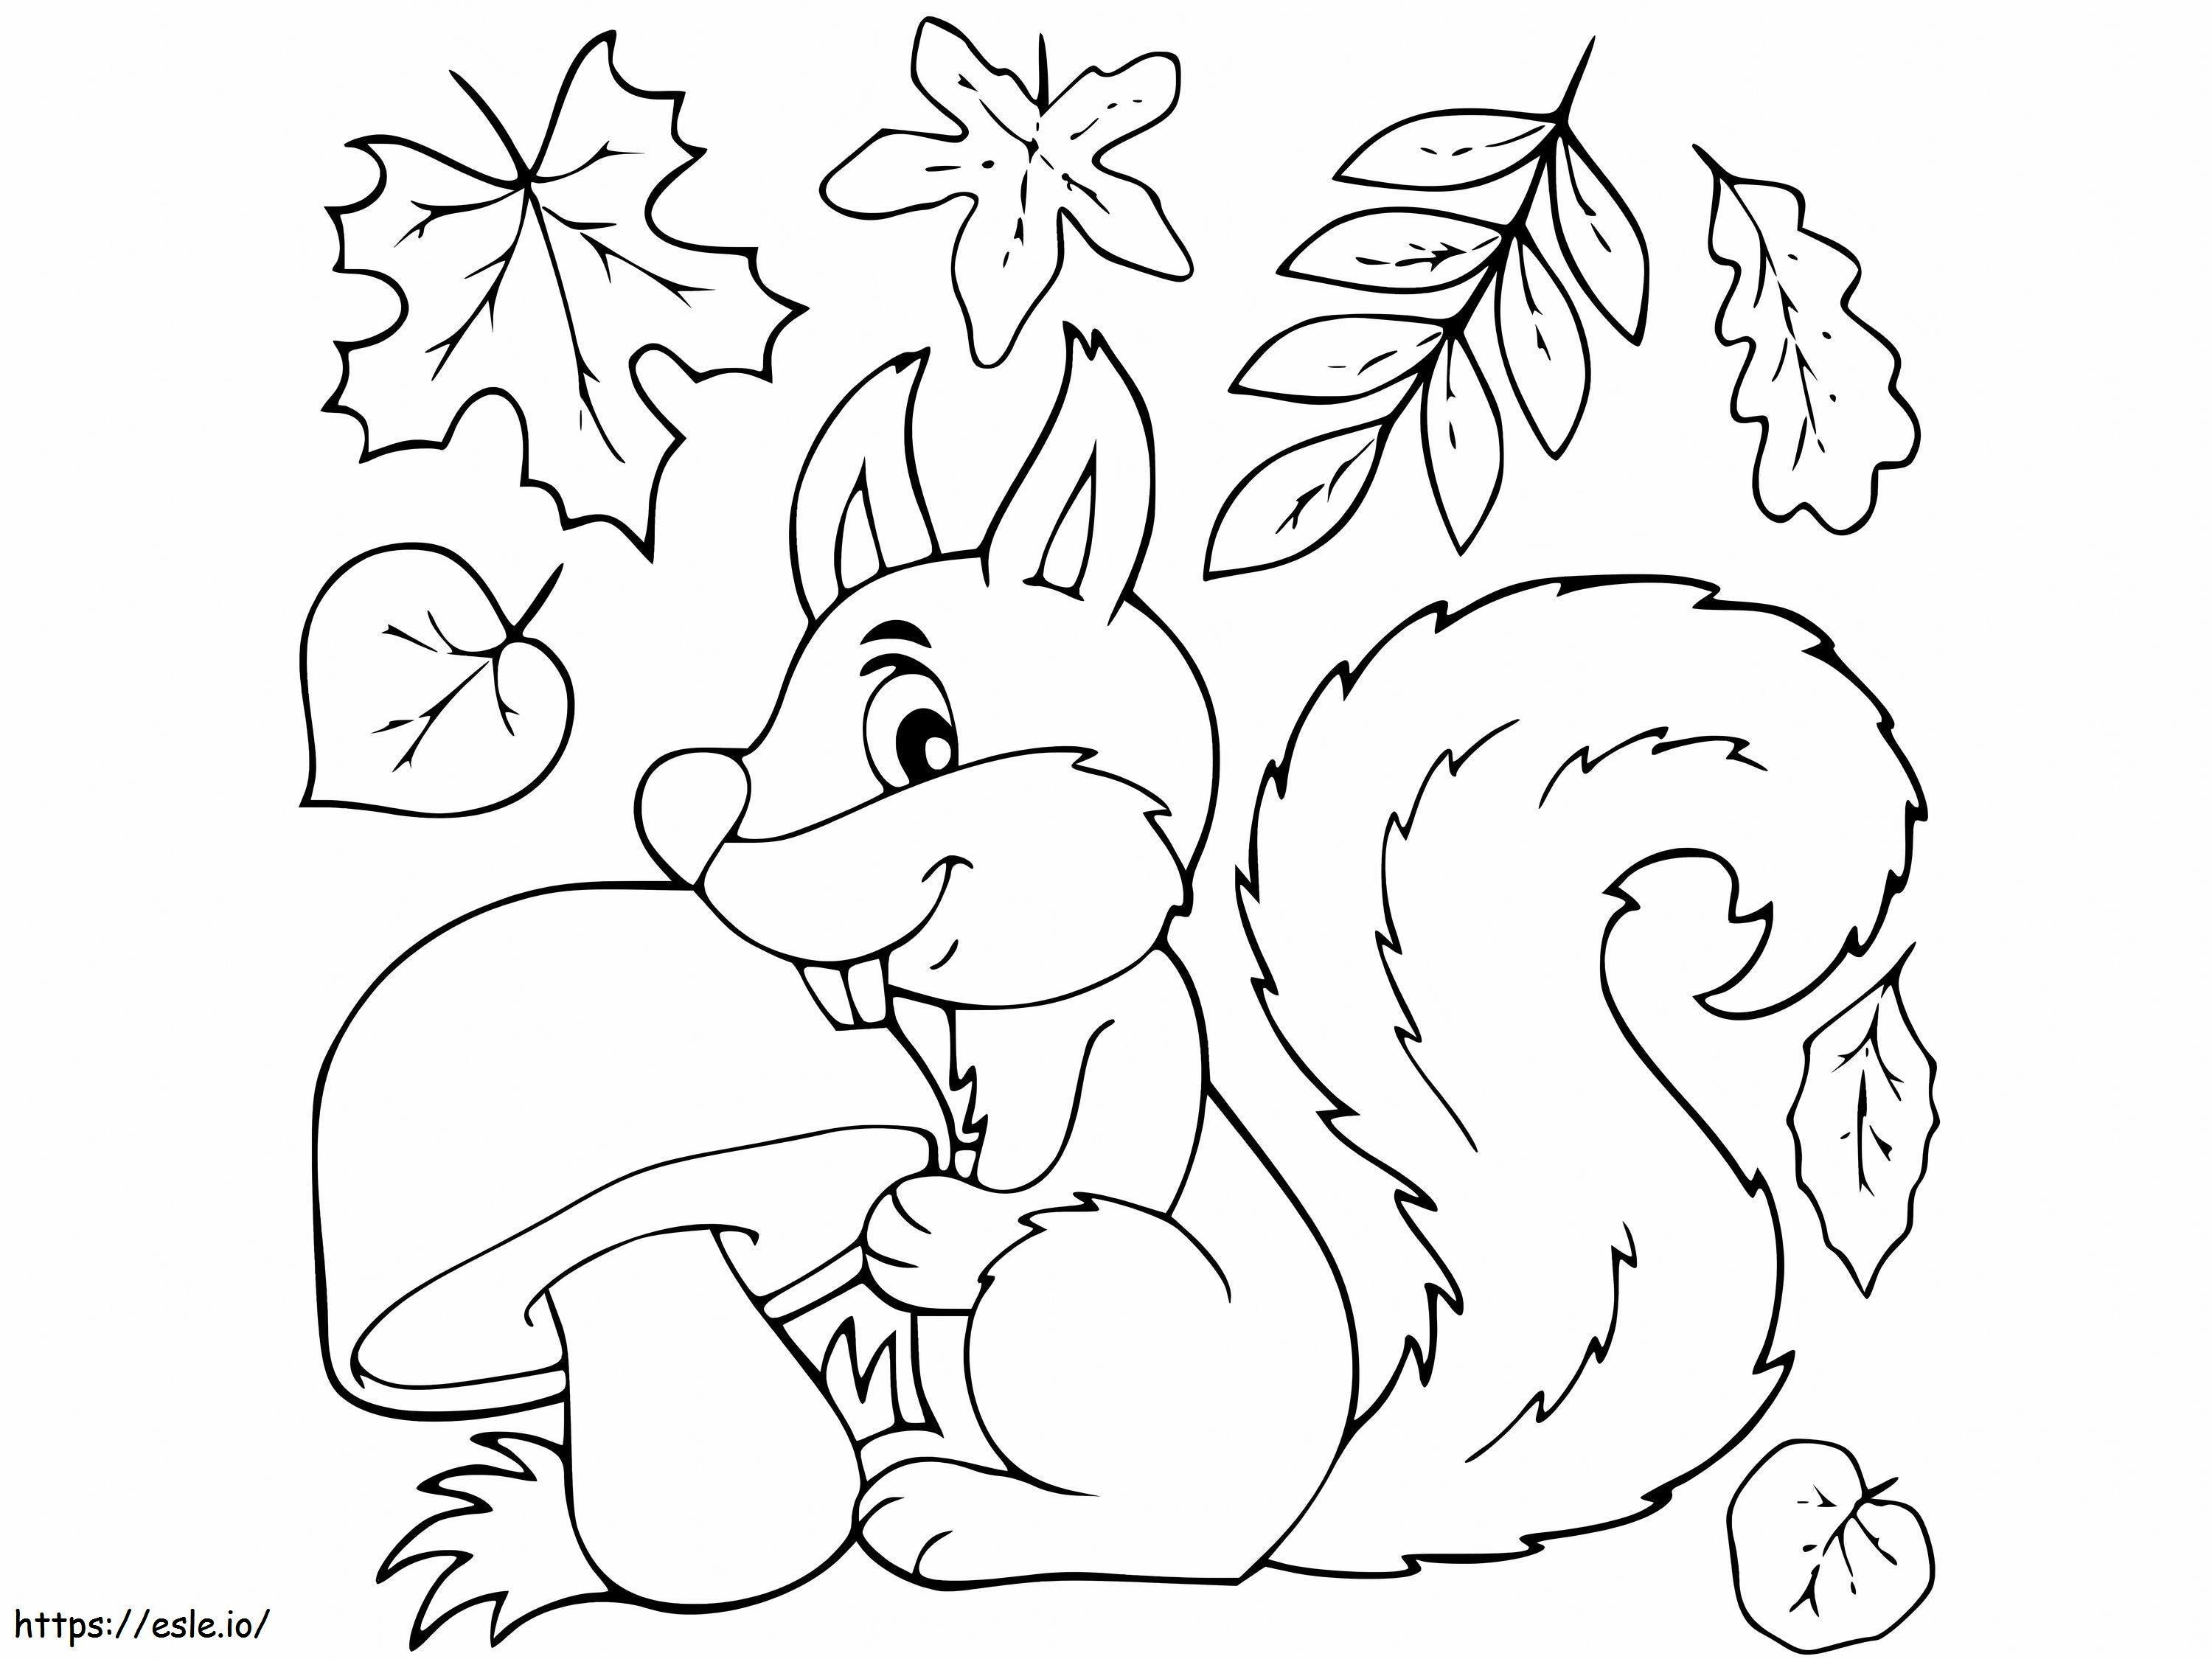 Coloriage Écureuil mangeant des champignons feuillus en automne à imprimer dessin